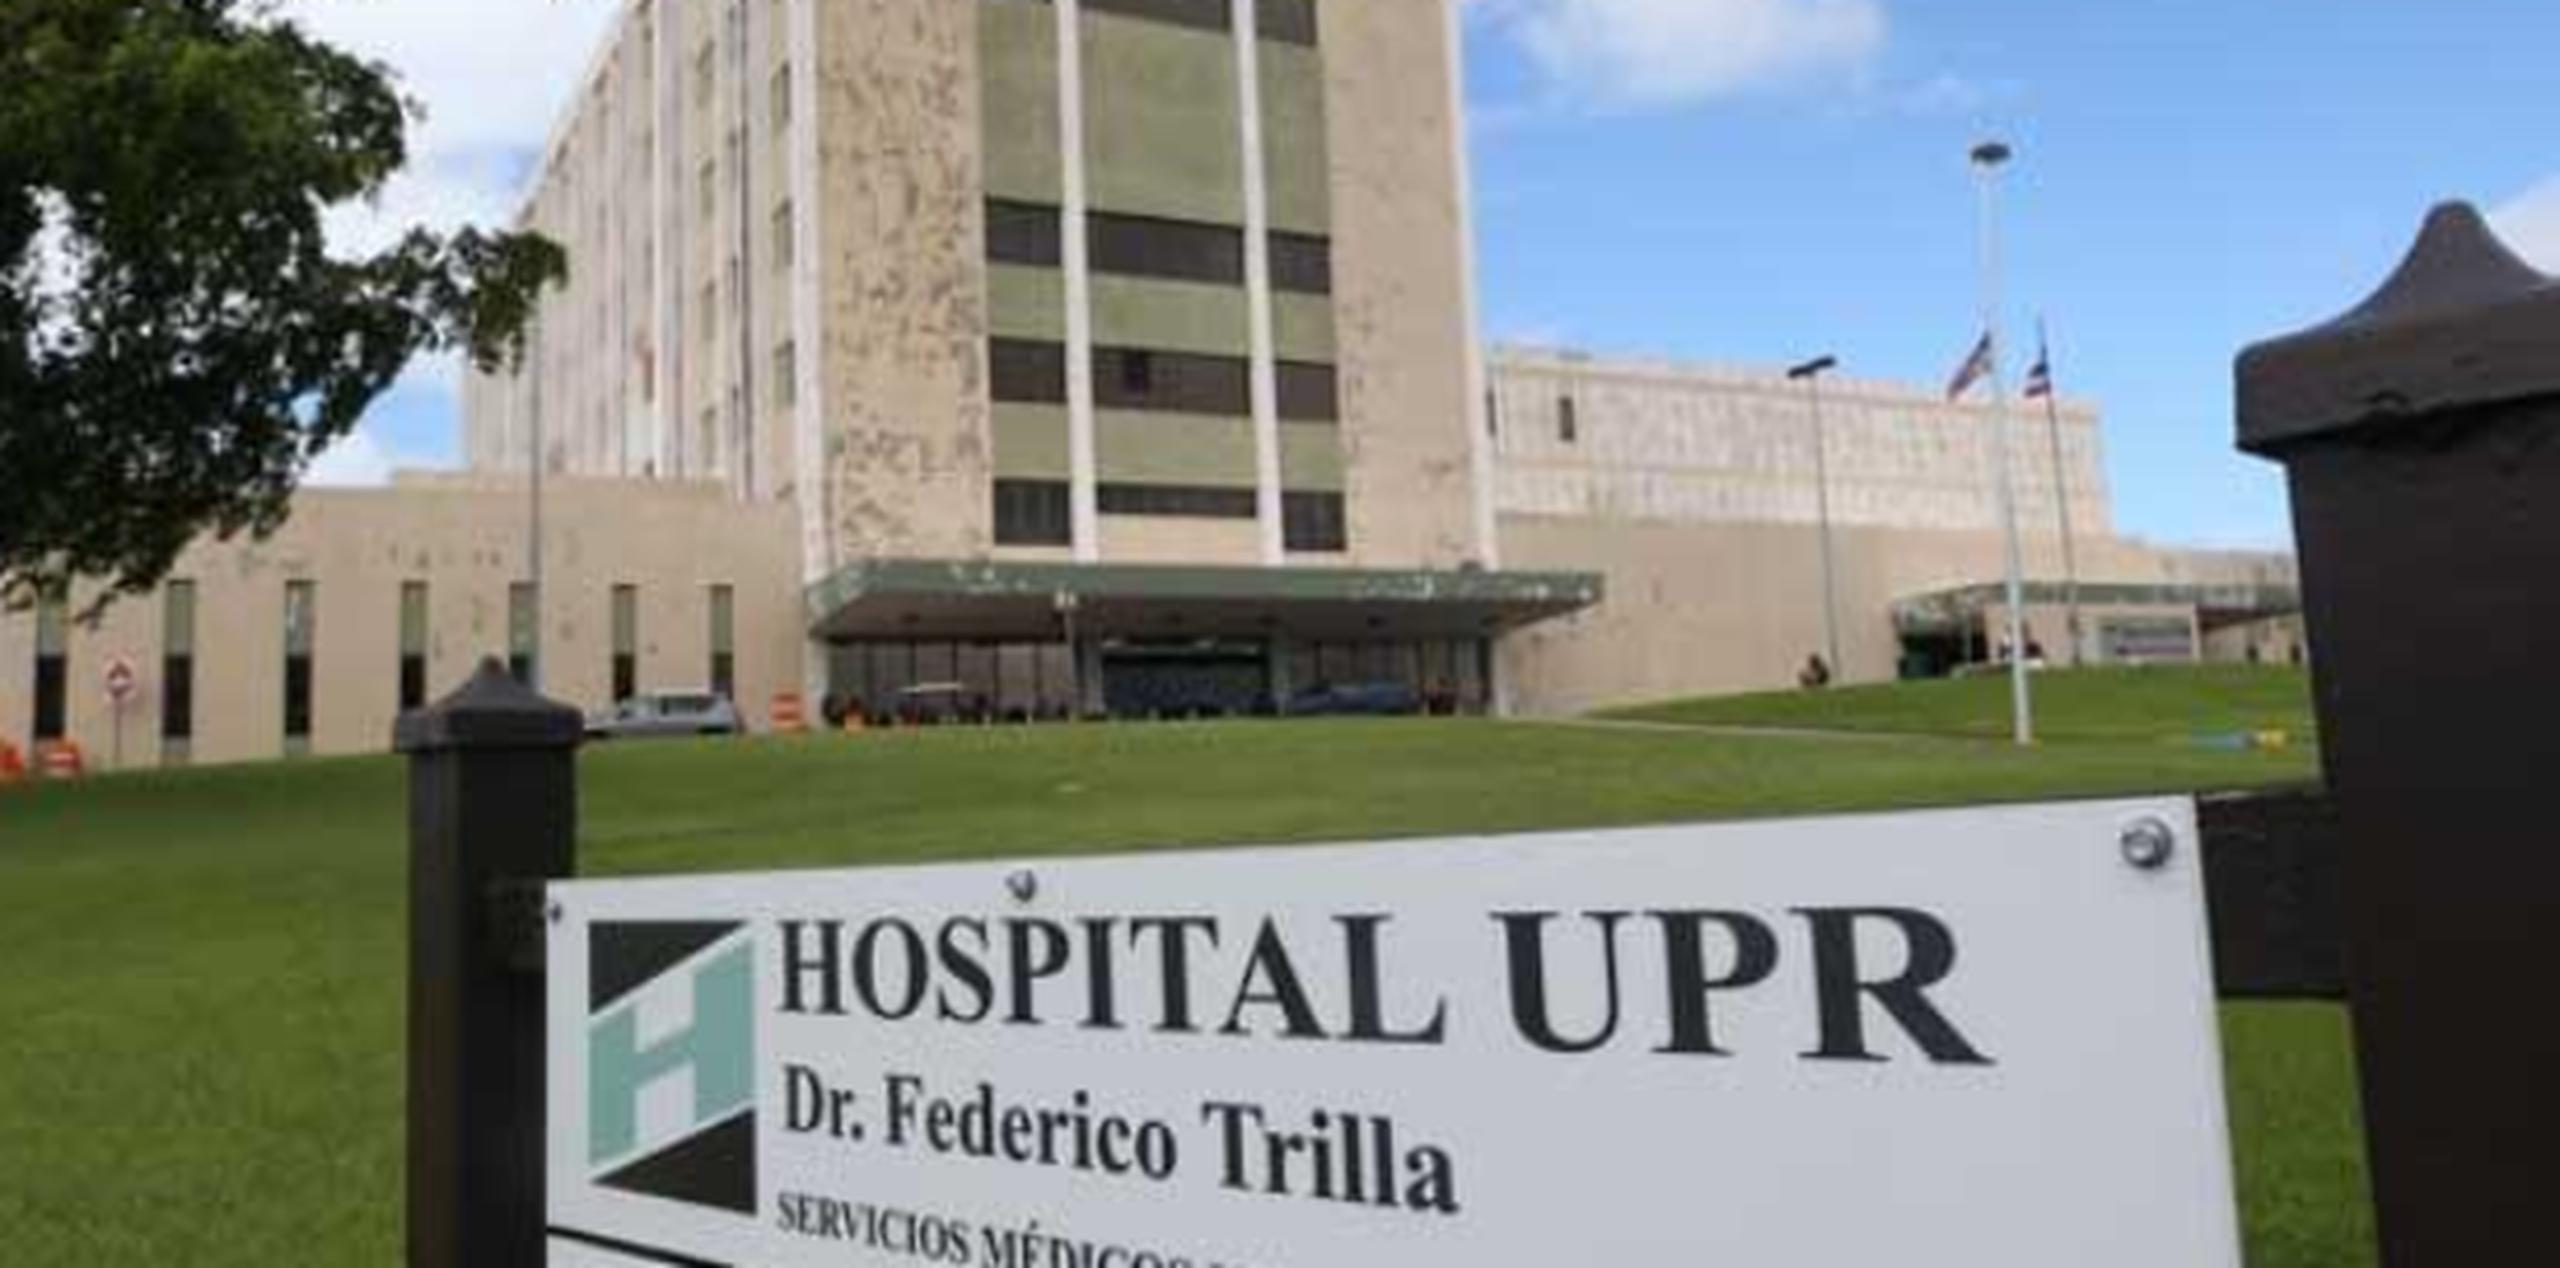 A la víctima le tomaron 30 puntos de sutura en el rostro en el hospital UPR de Carolina. (Archivo)

